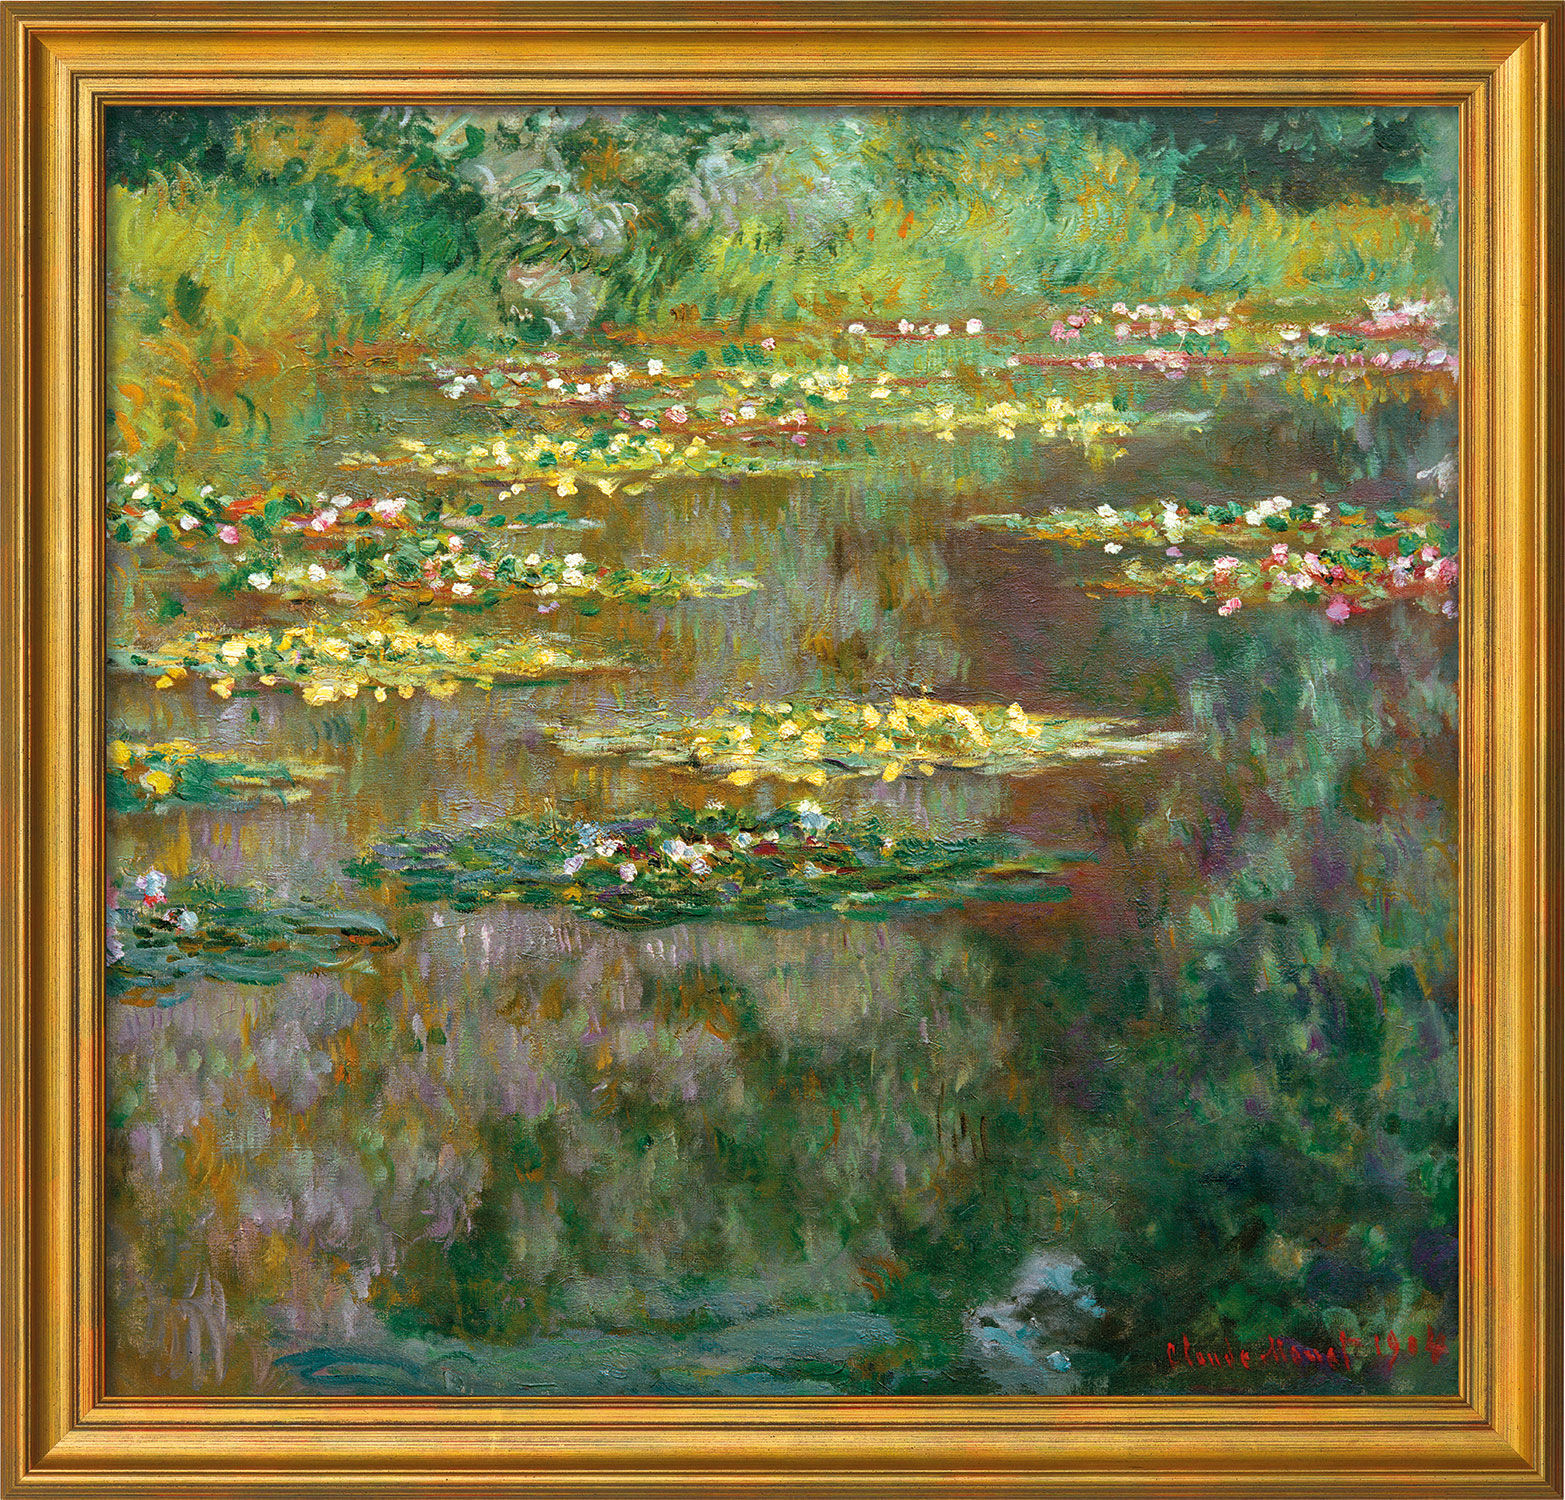 Tableau "Nymphéas" (1904), encadré von Claude Monet